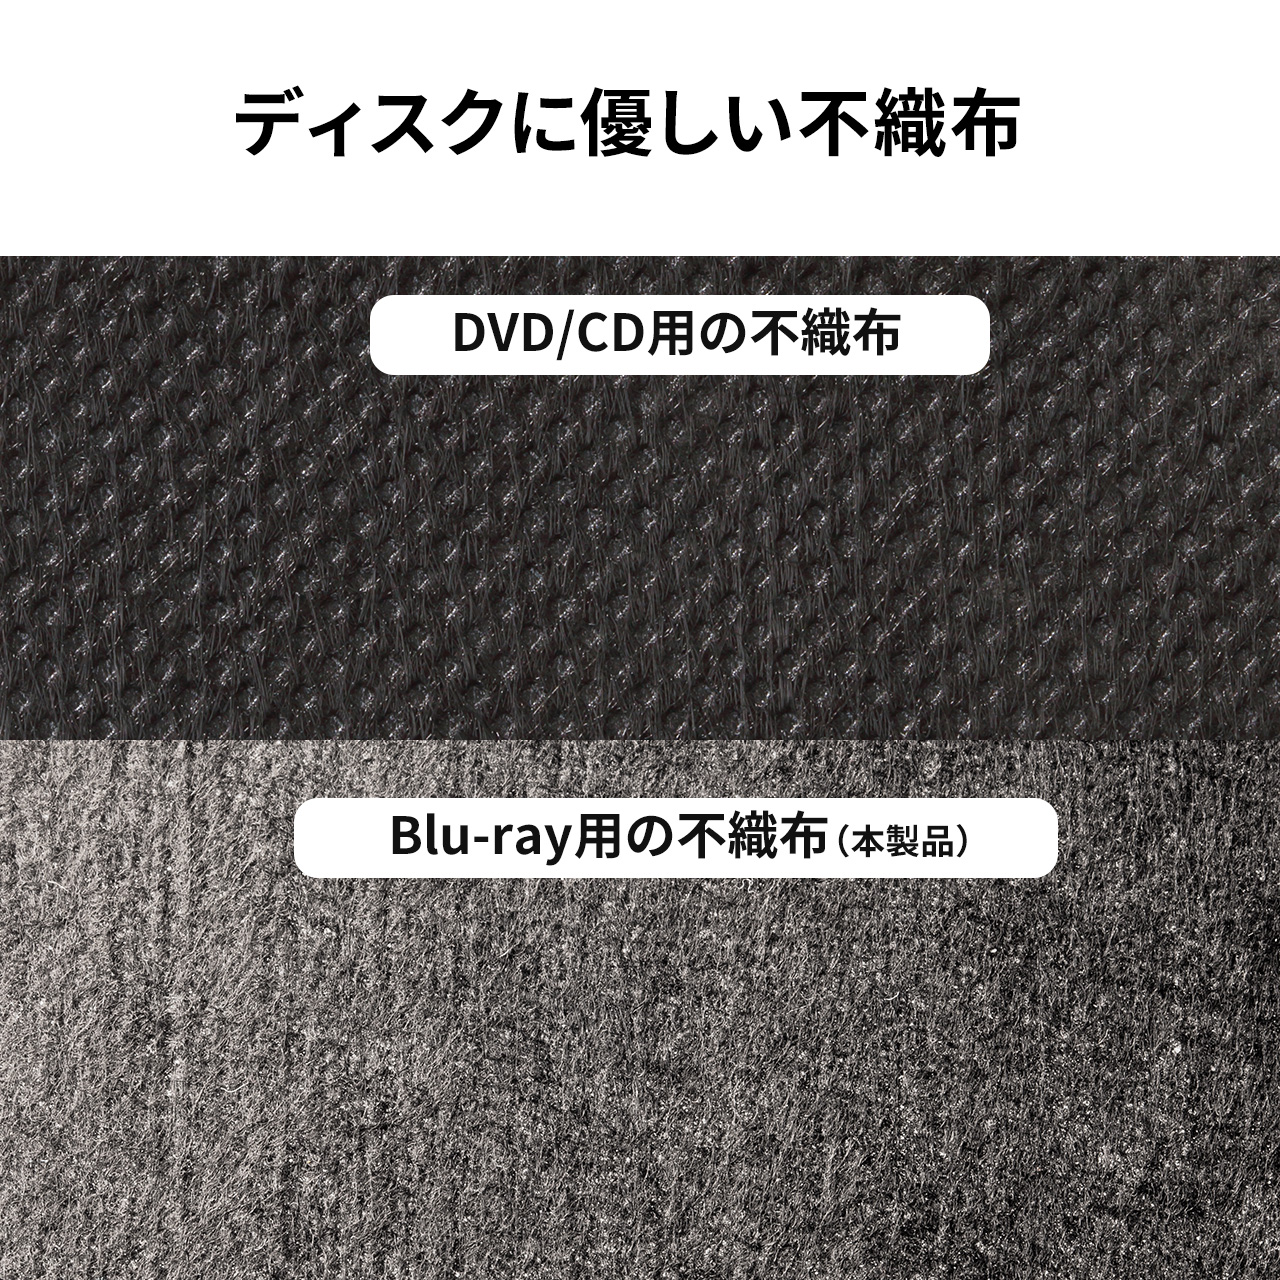 ブルーレイケース 収納 DVDケース CDケース キャリングケース 208枚収納 Blu-ray 保管 BD DVD CD ファイルケース セミハードケース 大容量 おしゃれ 200-FCD072